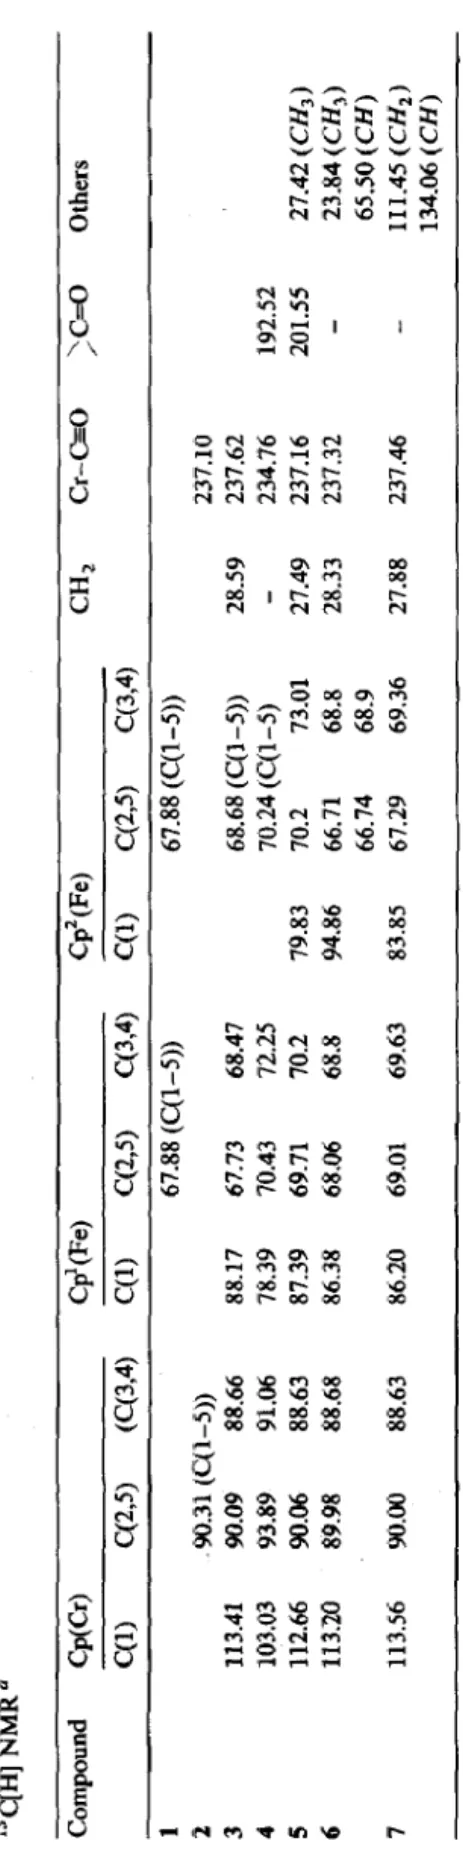 Table 3  13C[H] NMR’  Compound  Cp(Cr) C&amp;Fe)  Cp’(Fe)  CH, Cr-C=O &gt;C=O Others  C(l) q2,5) (C(3,4) C(1) c(2,5) C(3,4) C(l) ~(2~5) C(3,4)  1 67.88 (C(l-5)) 67.88 (C(l-5))  2 ,90.31 (cql-5)) 237.10  3 113.41 90.09 88.66 88.17 67.73 68.47 68.68 (C(l-5))